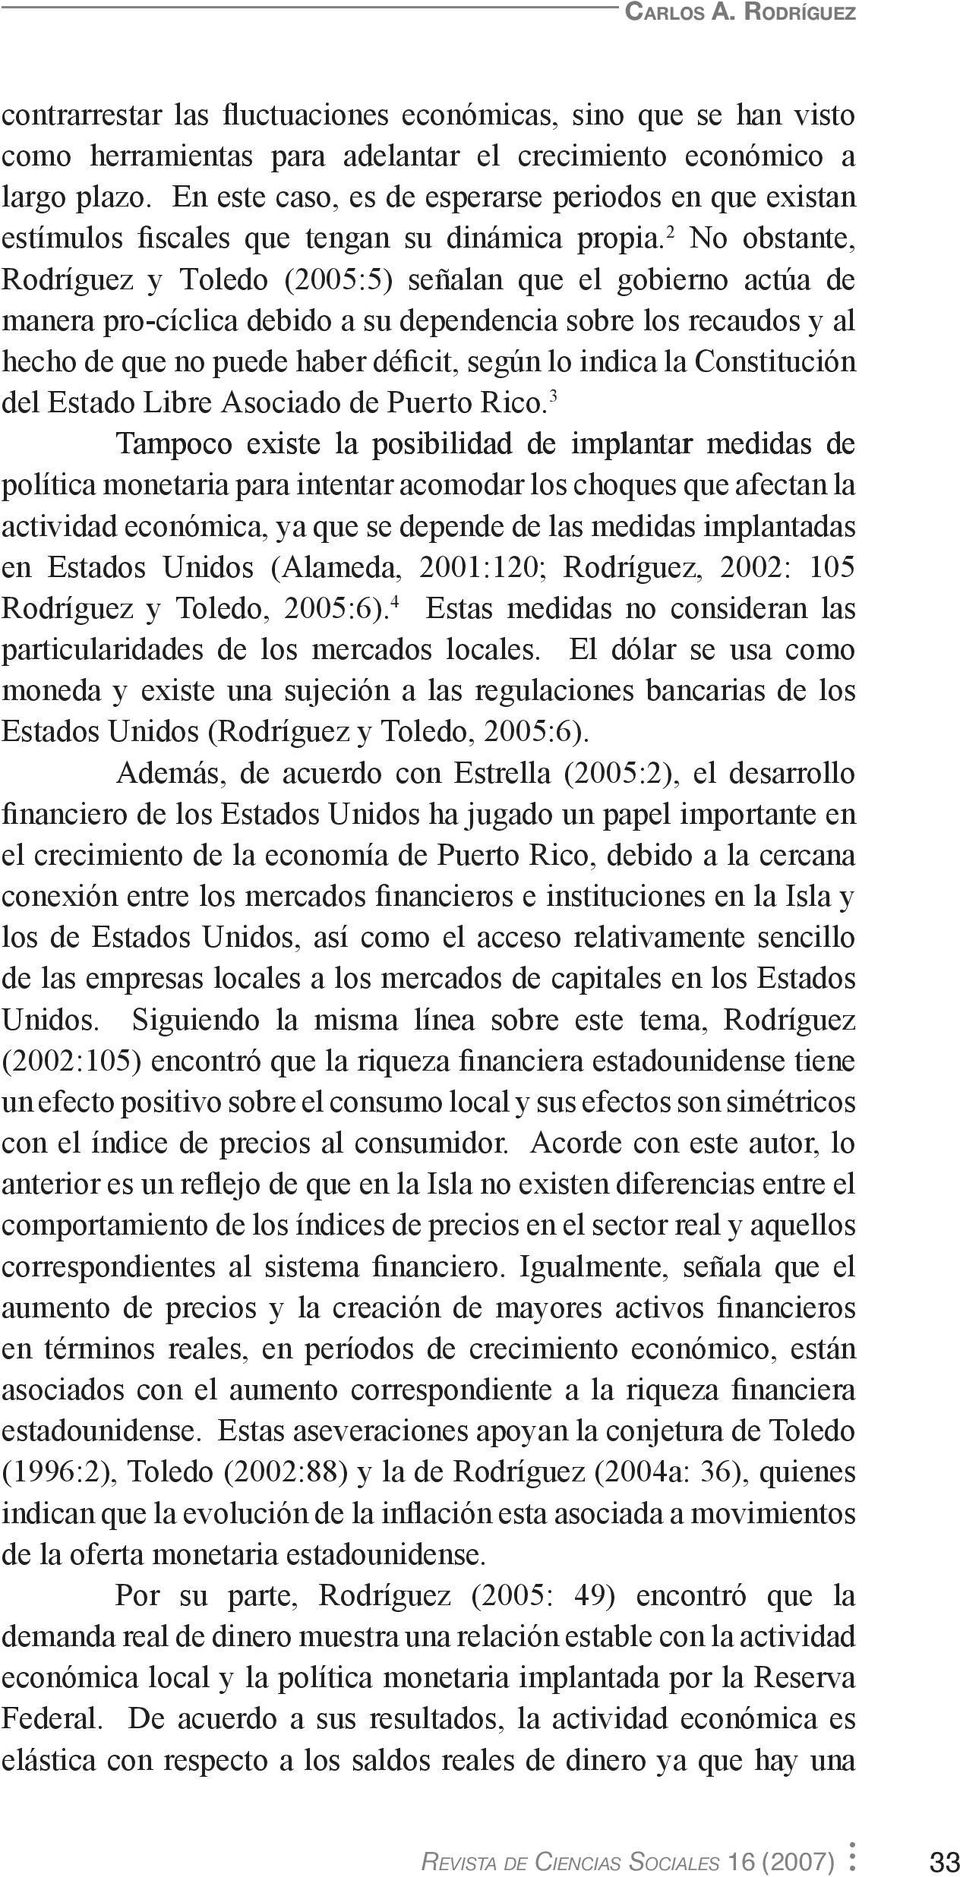 2 No obstante, Rodríguez y Toledo (2005:5) señalan que el gobierno actúa de manera pro-cíclica debido a su dependencia sobre los recaudos y al hecho de que no puede haber déficit, según lo indica la